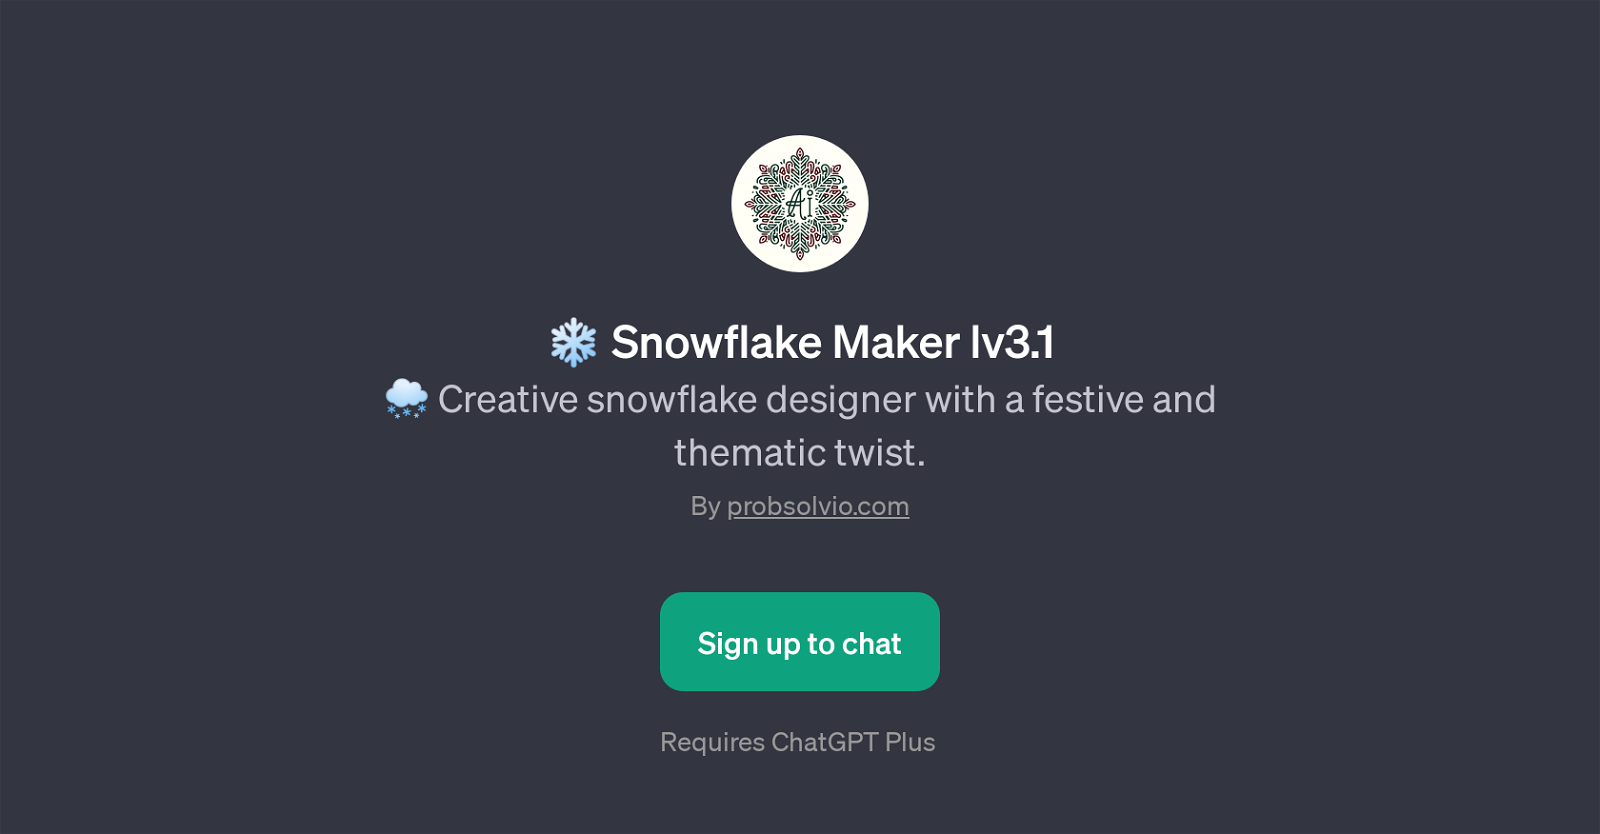 Snowflake Maker lv3.1 website